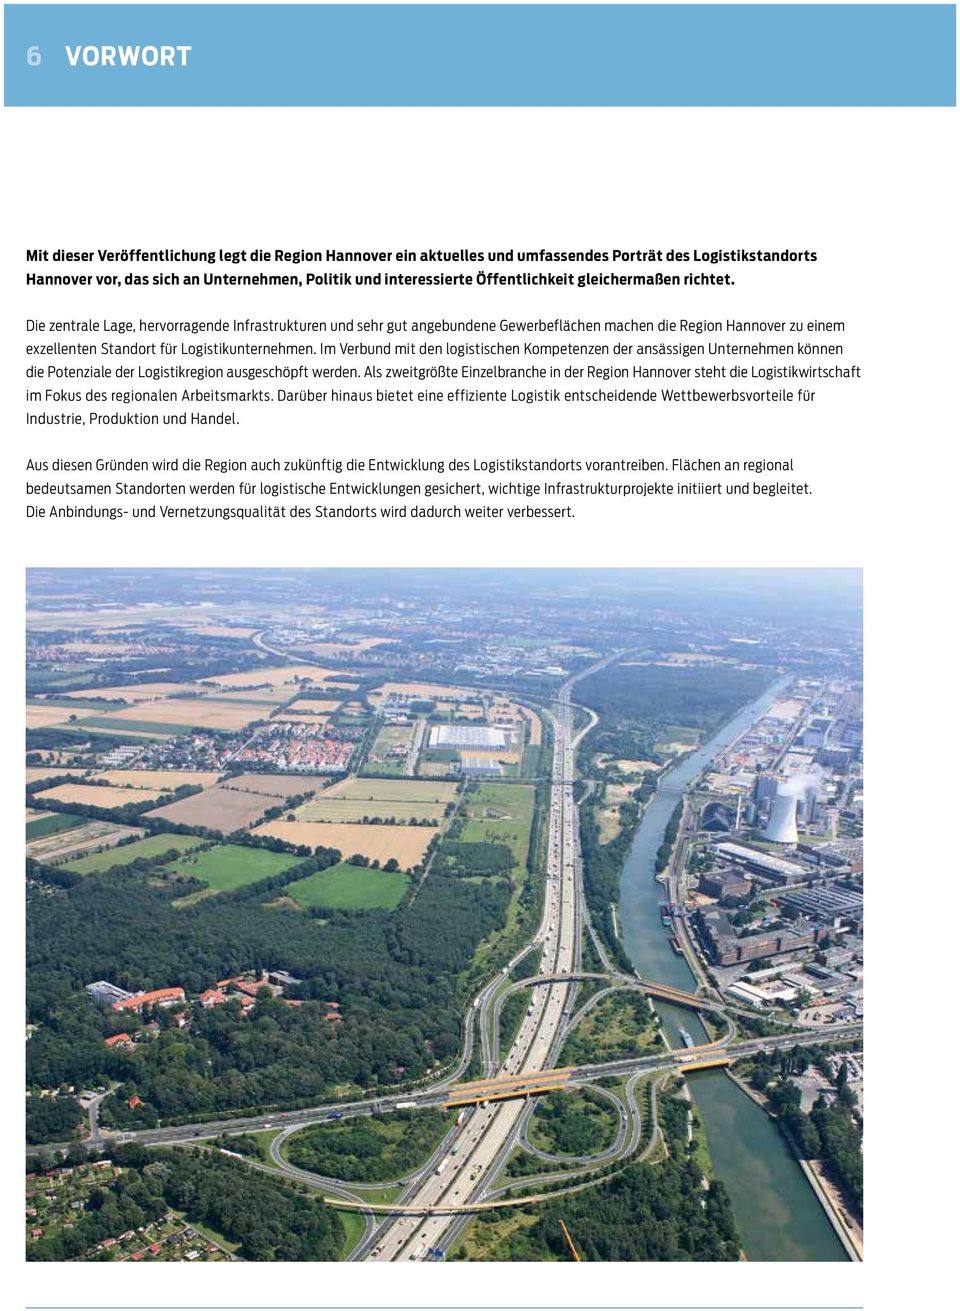 Die zentrale Lage, hervorragende Infrastrukturen und sehr gut angebundene Gewerbeflächen machen die Region Hannover zu einem exzellenten Standort für Logistikunternehmen.